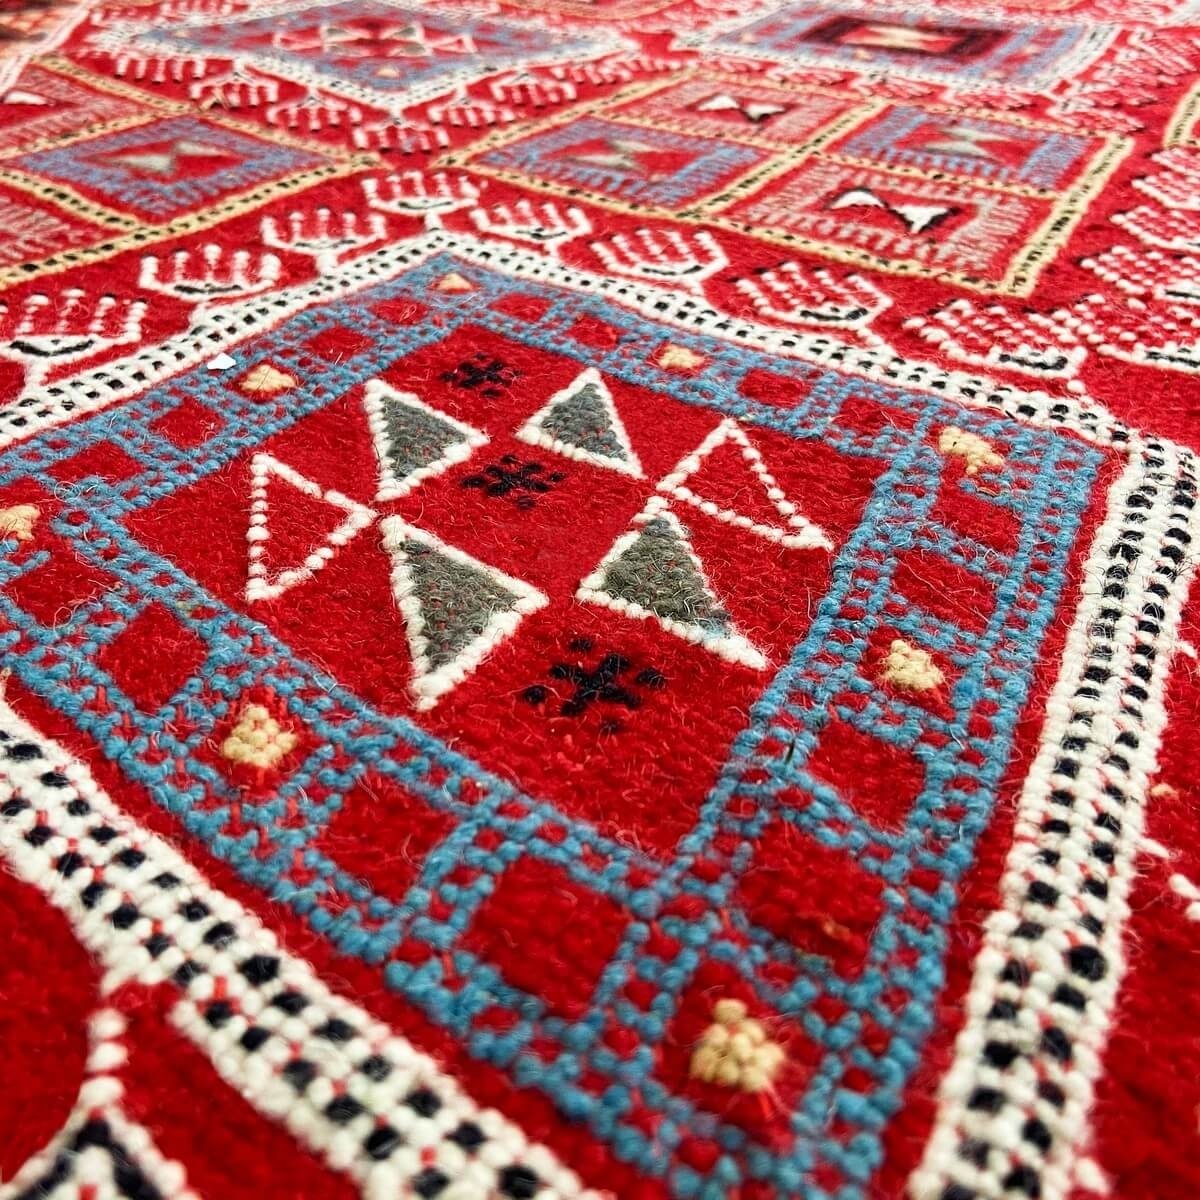 tappeto berbero Tappeto Margoum Ayoun 126x208 Rosso (Fatto a mano, Lana) Tappeto margoum tunisino della città di Kairouan. Tappe